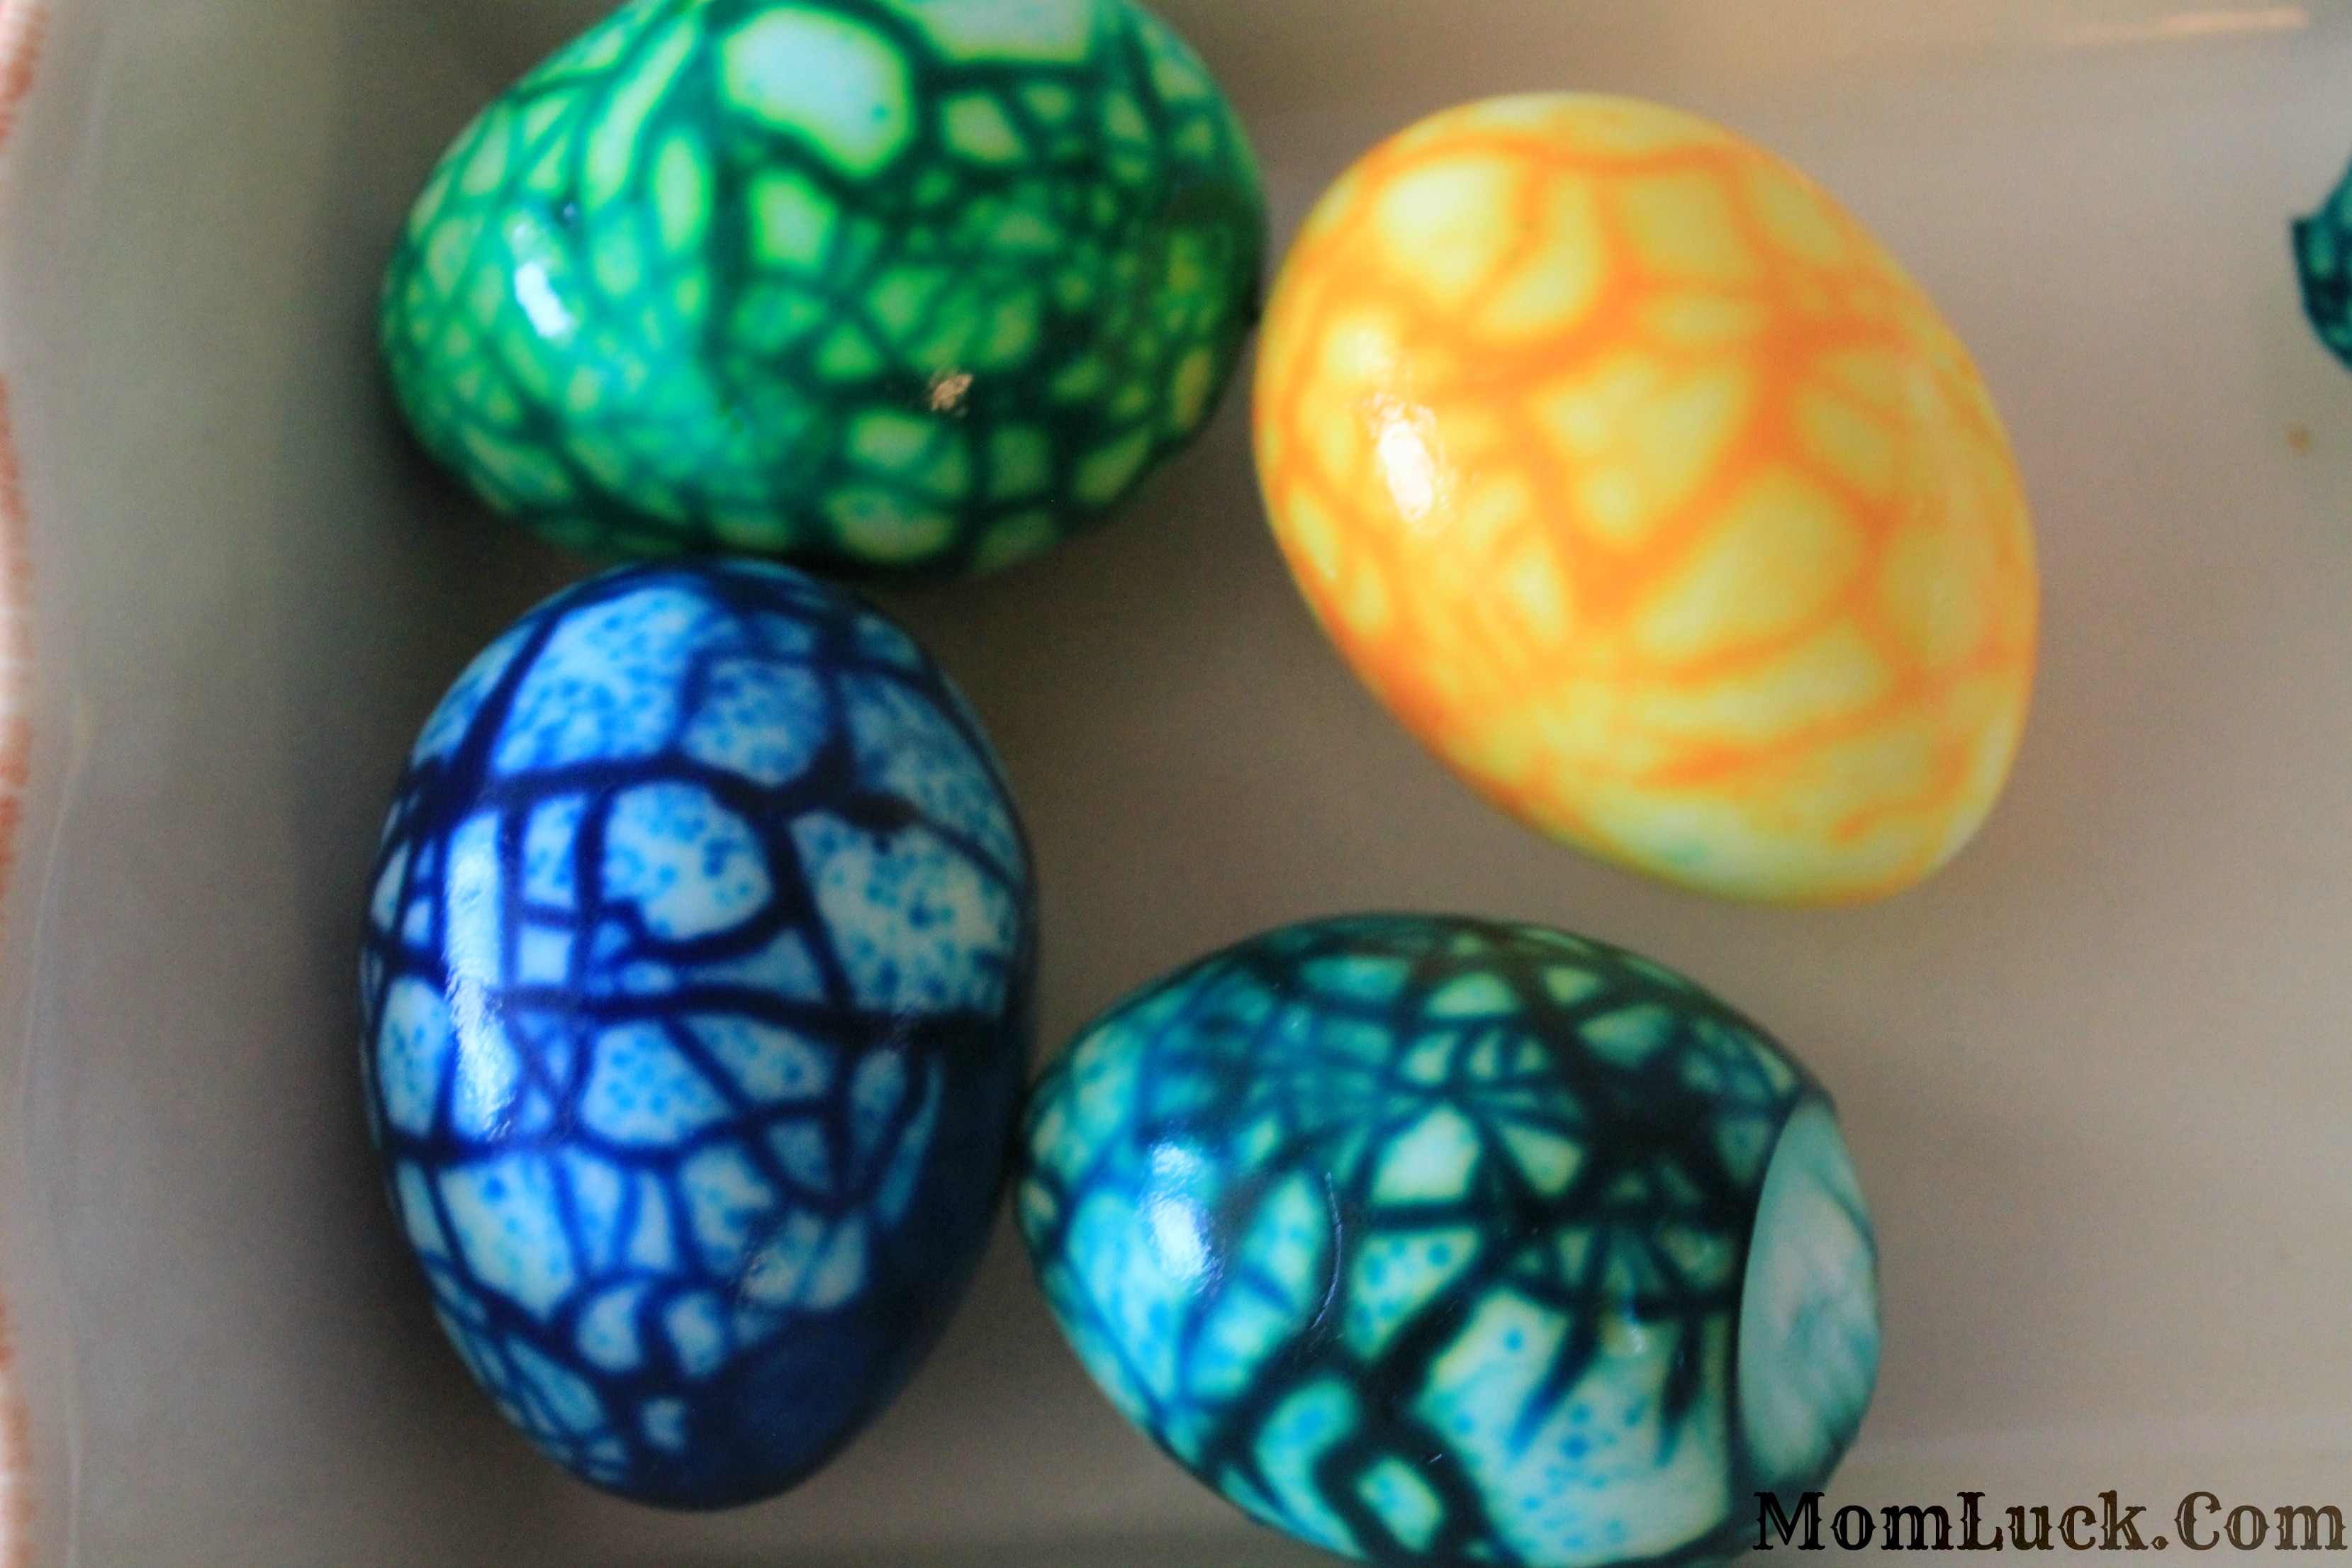 How do you color eggs?